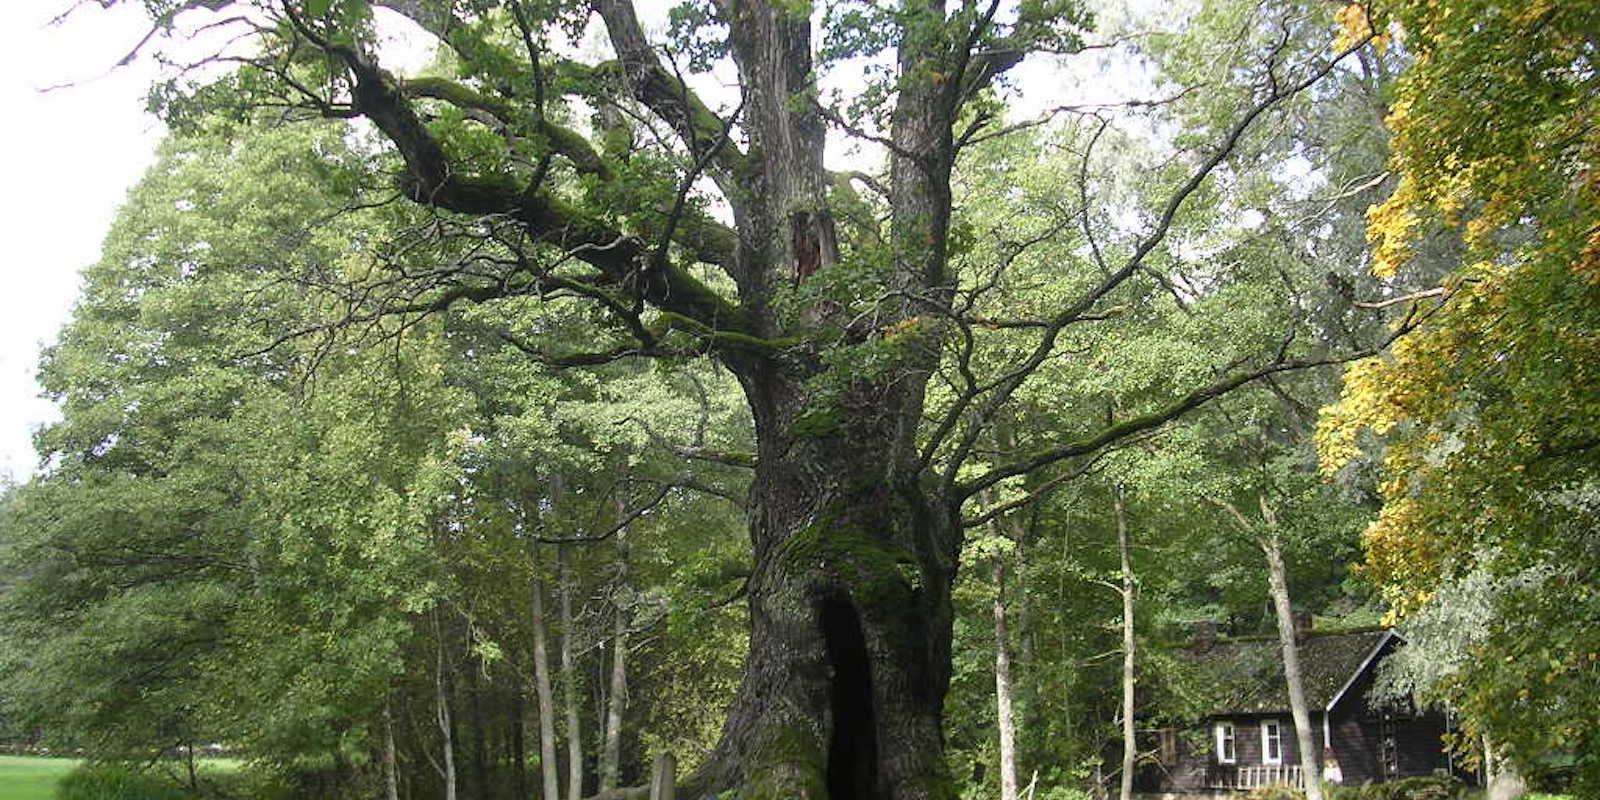 Tülivere sacred oak